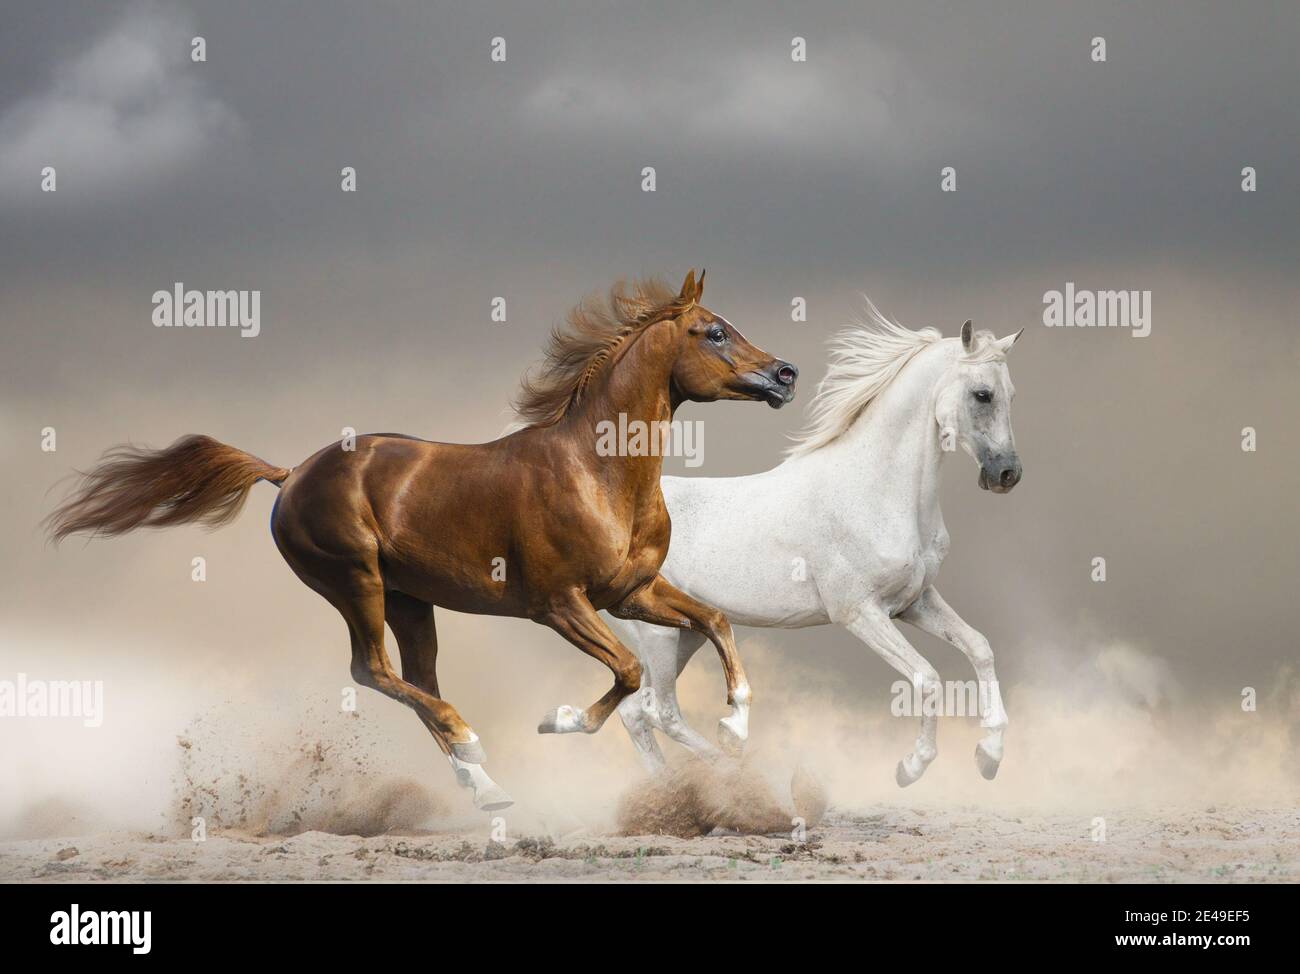 Arabische Pferde laufen wild gegen den stürmischen Himmel in der Wüste Stockfoto